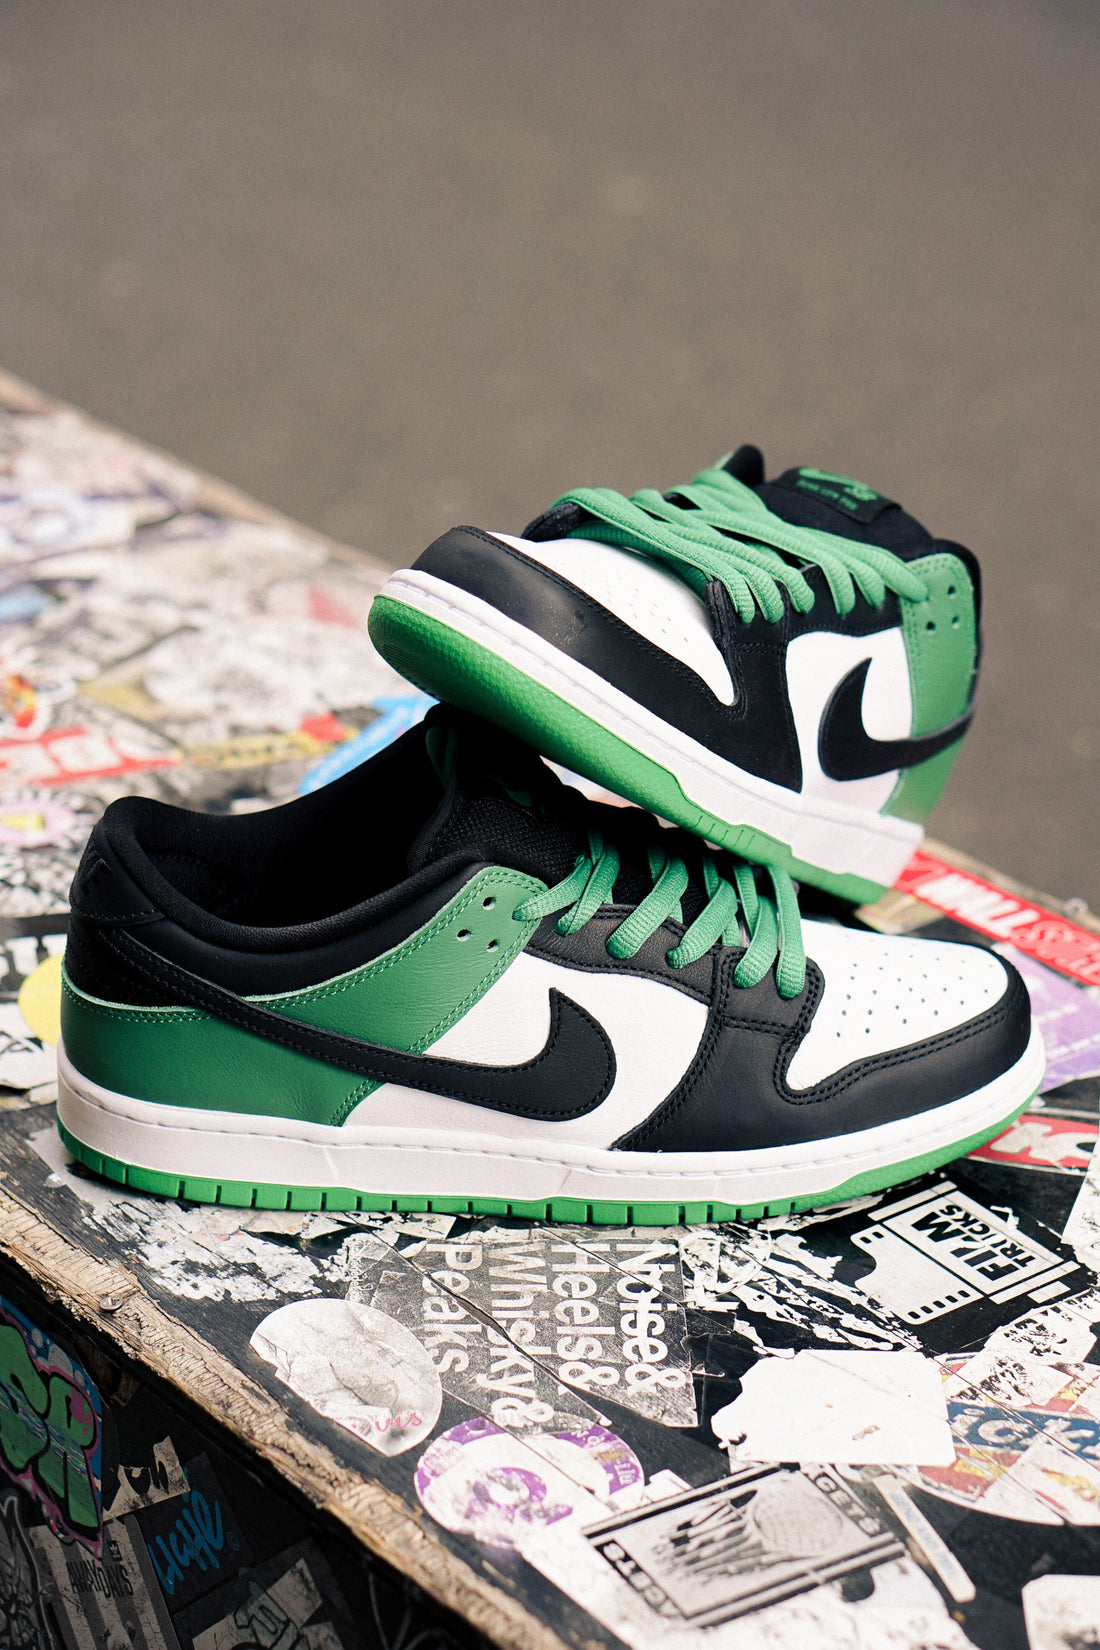 Nike SB - Dunk Low Pro - Classic Green Black White